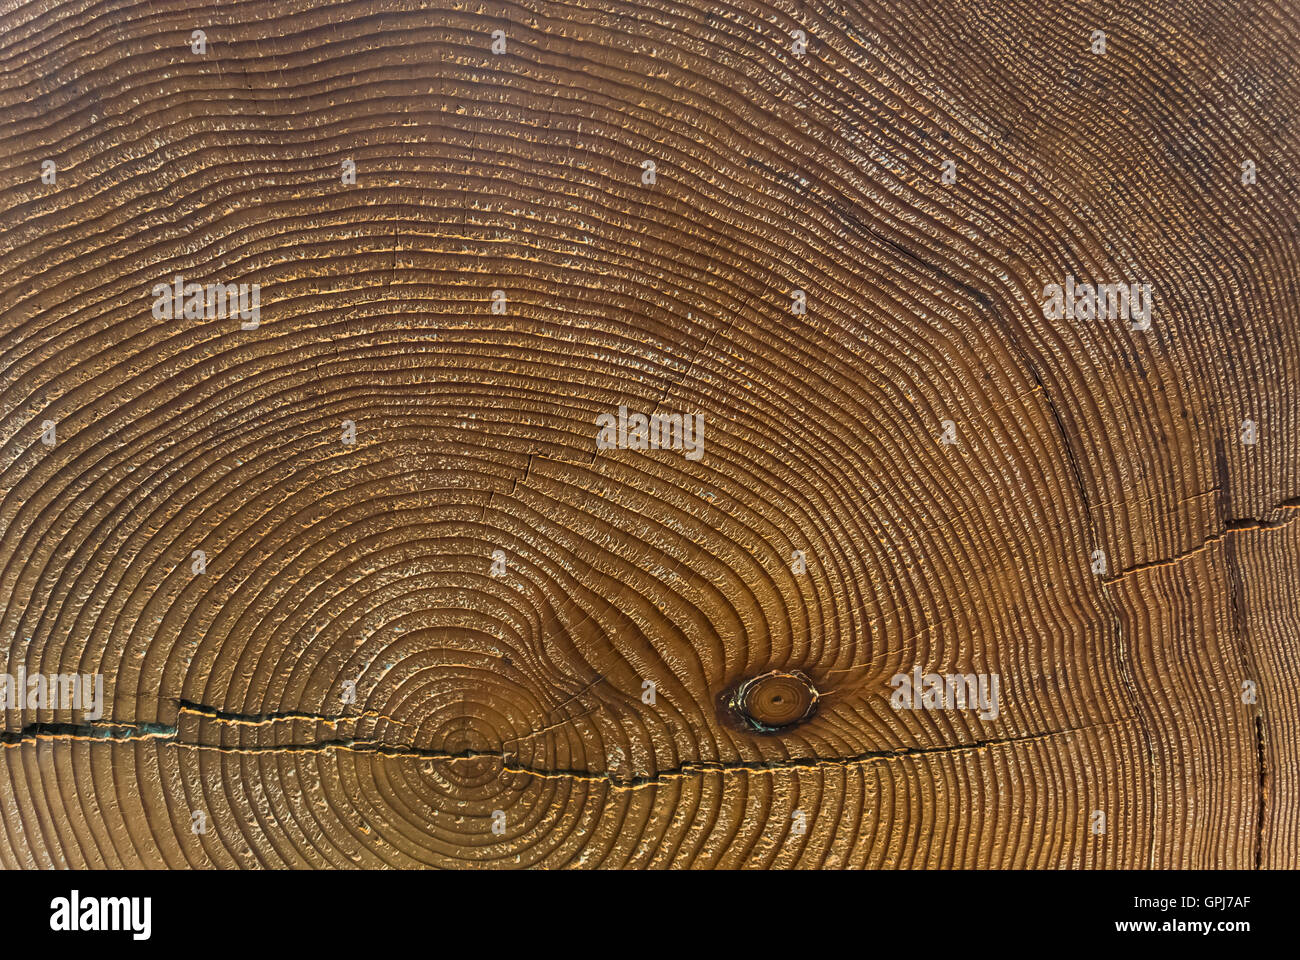 Les anneaux de croissance des arbres - Mesure de temps Banque D'Images